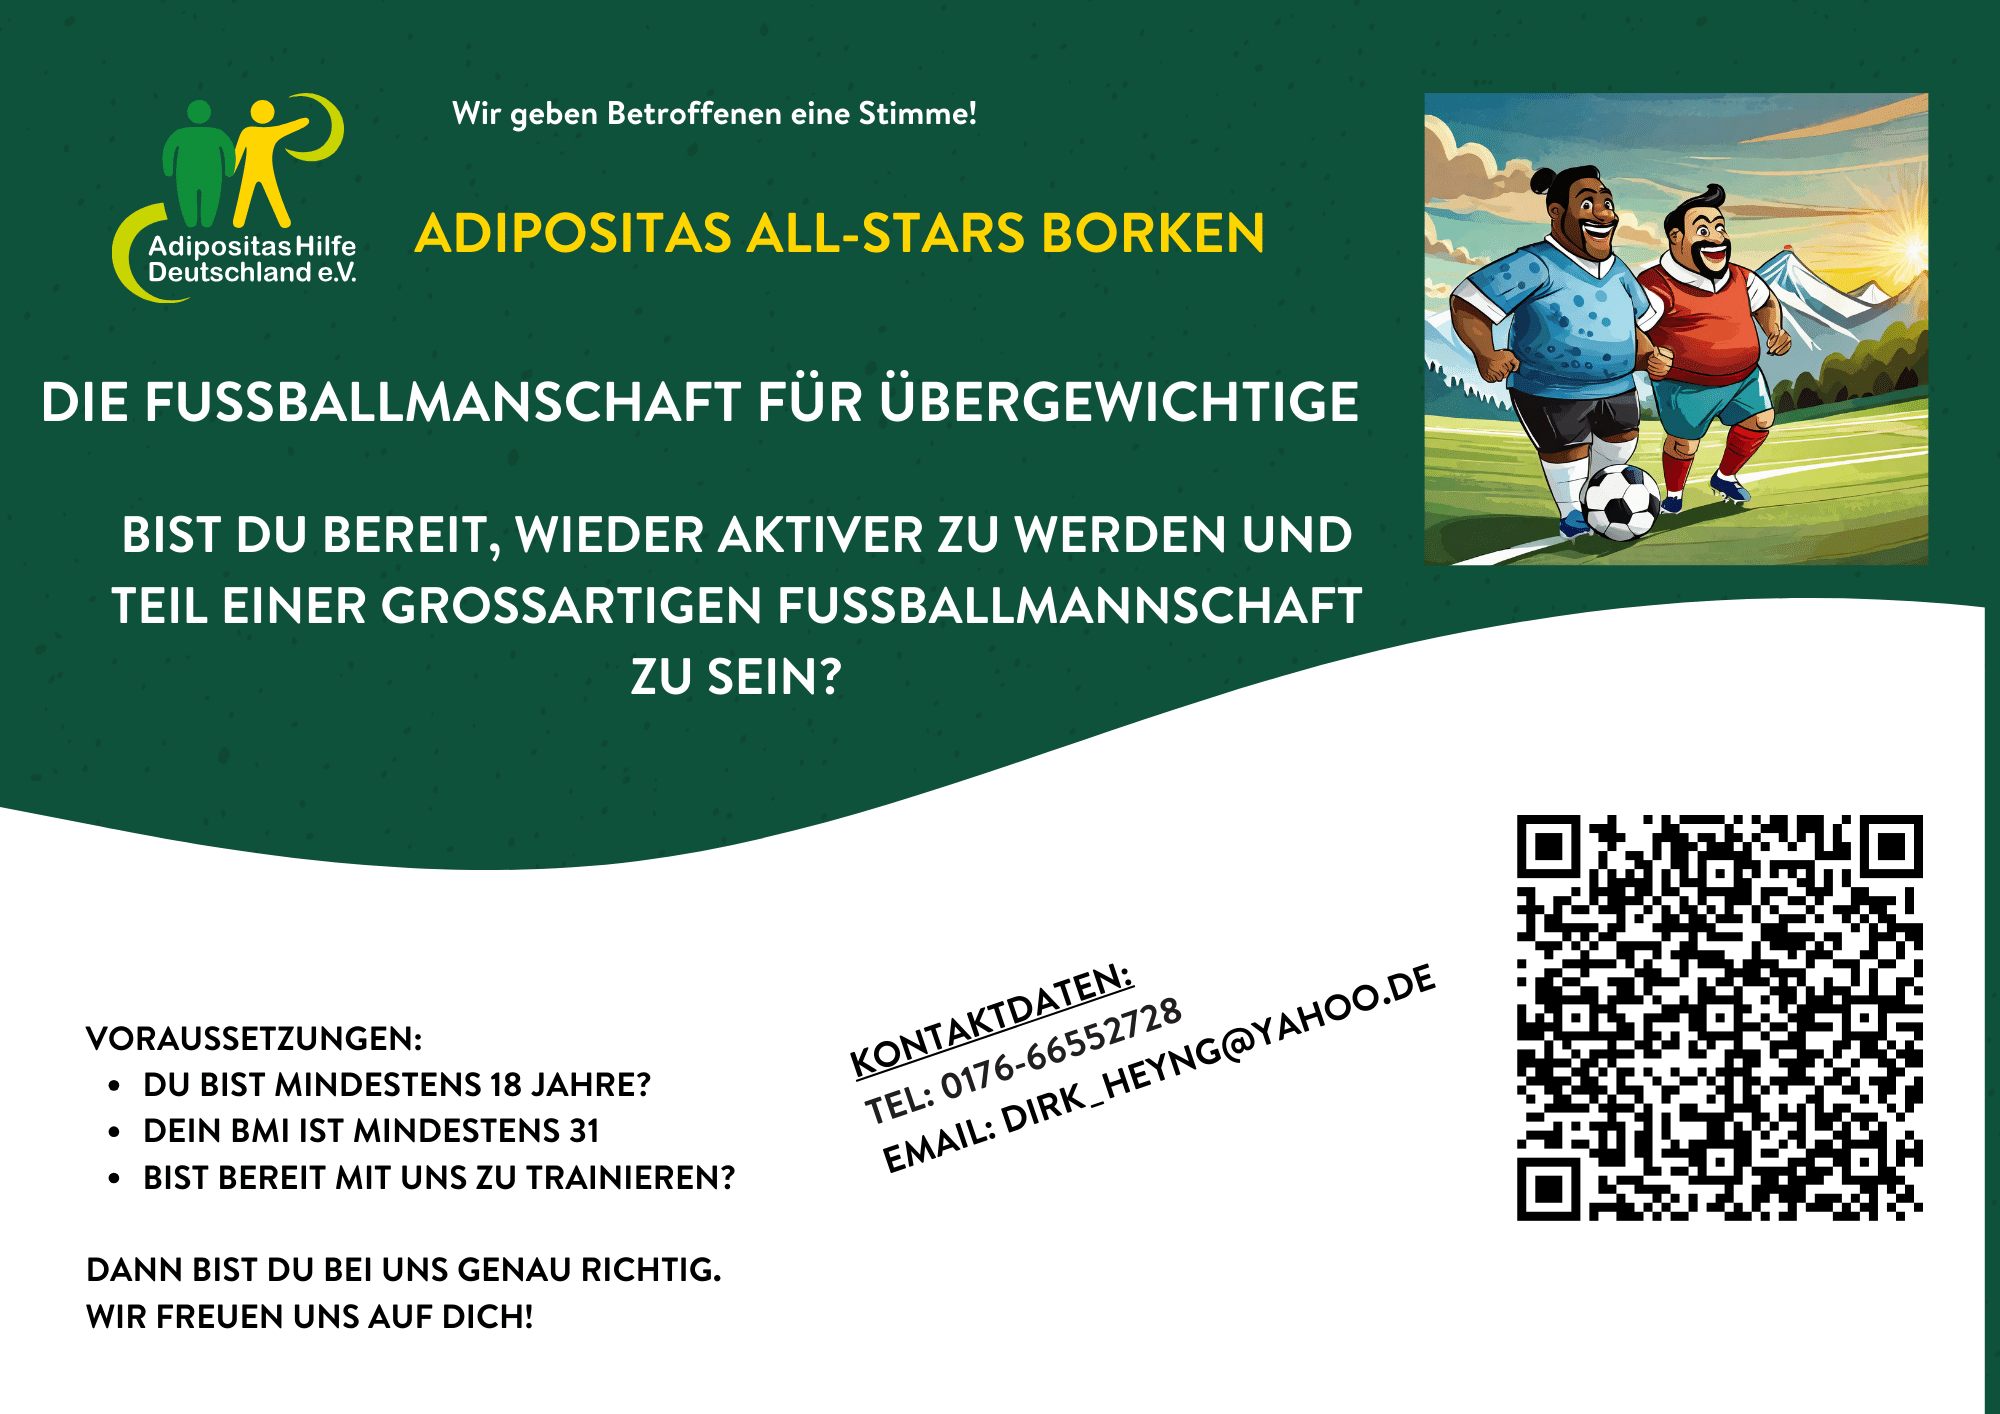 Adipositas All-Stars Borken